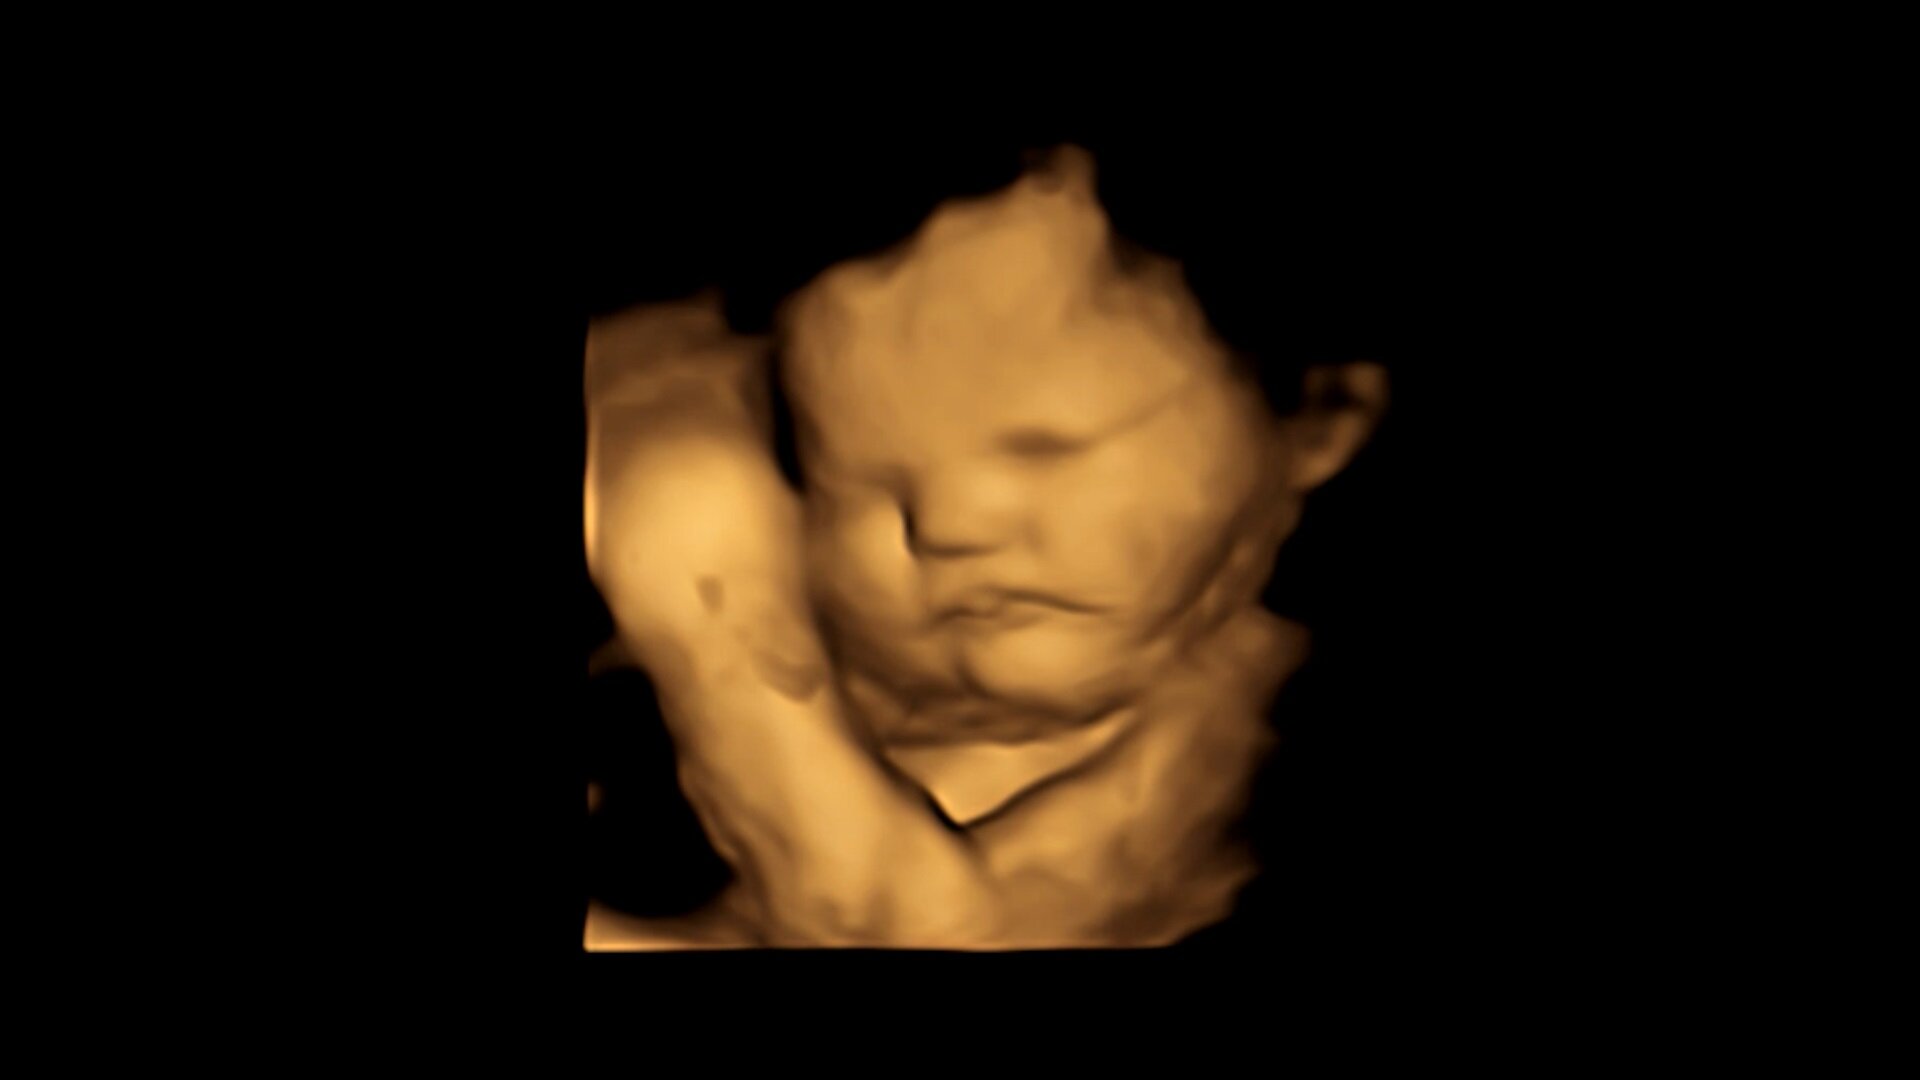 El feto muestra una cara neutral ante la col rizada / Crédito: Estudio FETAP (Preferencias de sabor fetal), Laboratorio de Investigación Fetal y Neonatal, Universidad de Durham